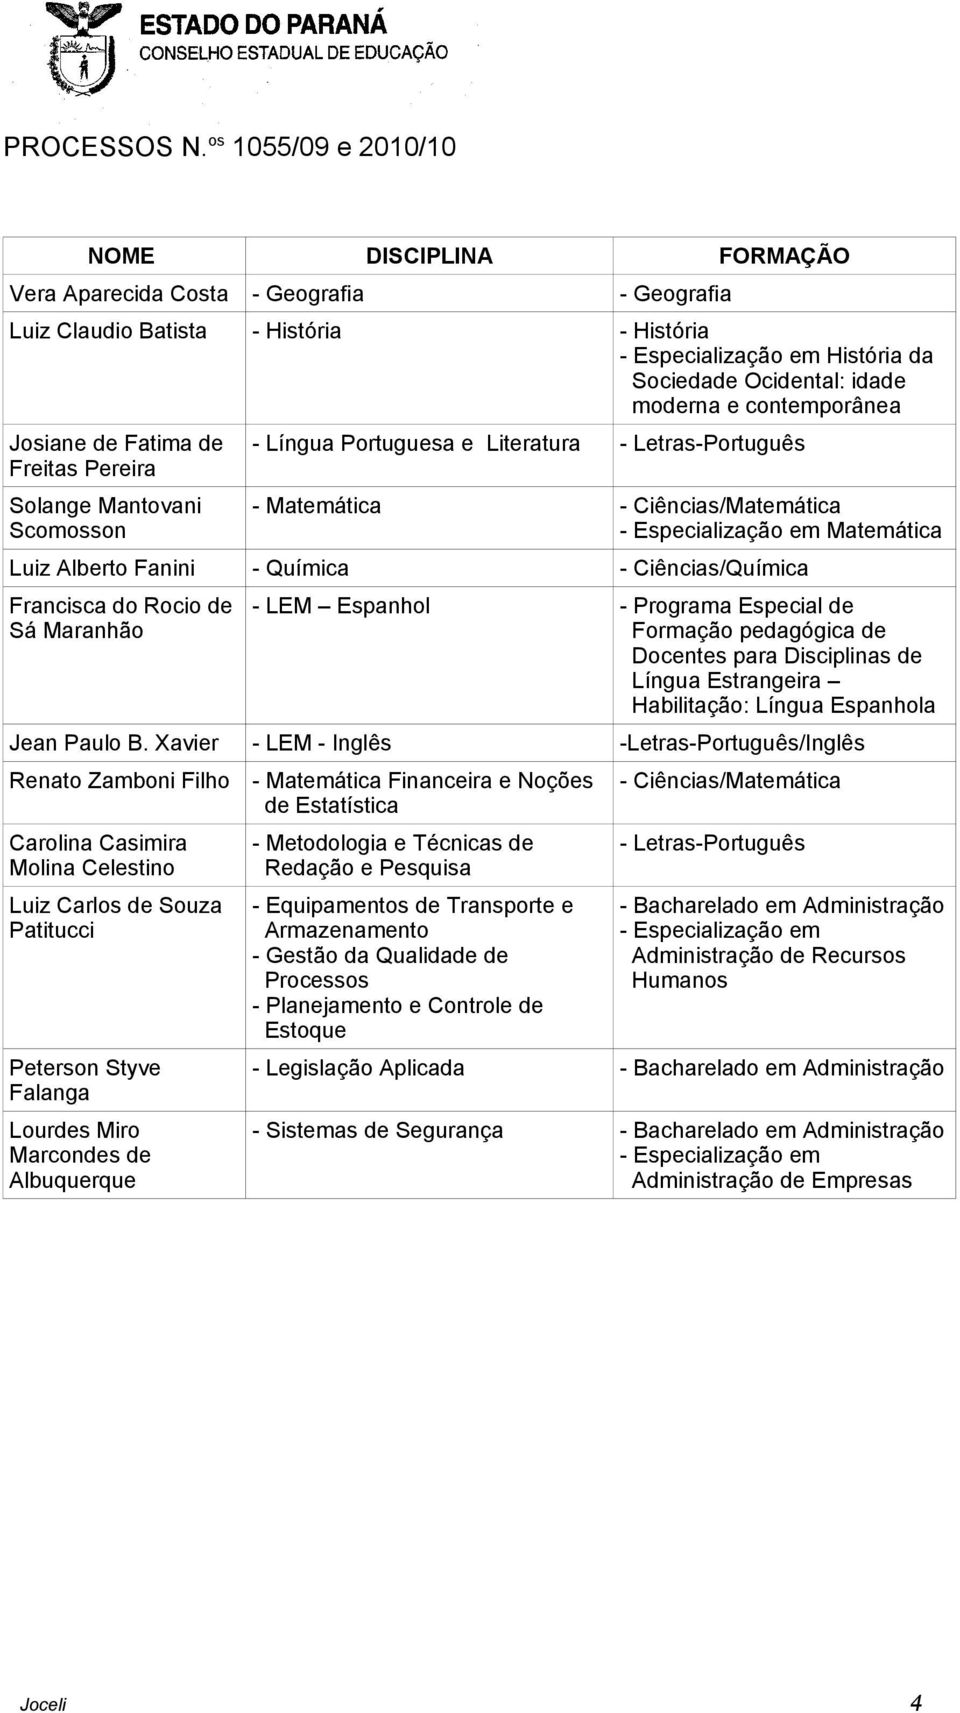 Fanini - Química - Ciências/Química Francisca do Rocio de Sá Maranhão - LEM Espanhol - Programa Especial de Formação pedagógica de Docentes para Disciplinas de Língua Estrangeira Habilitação: Língua